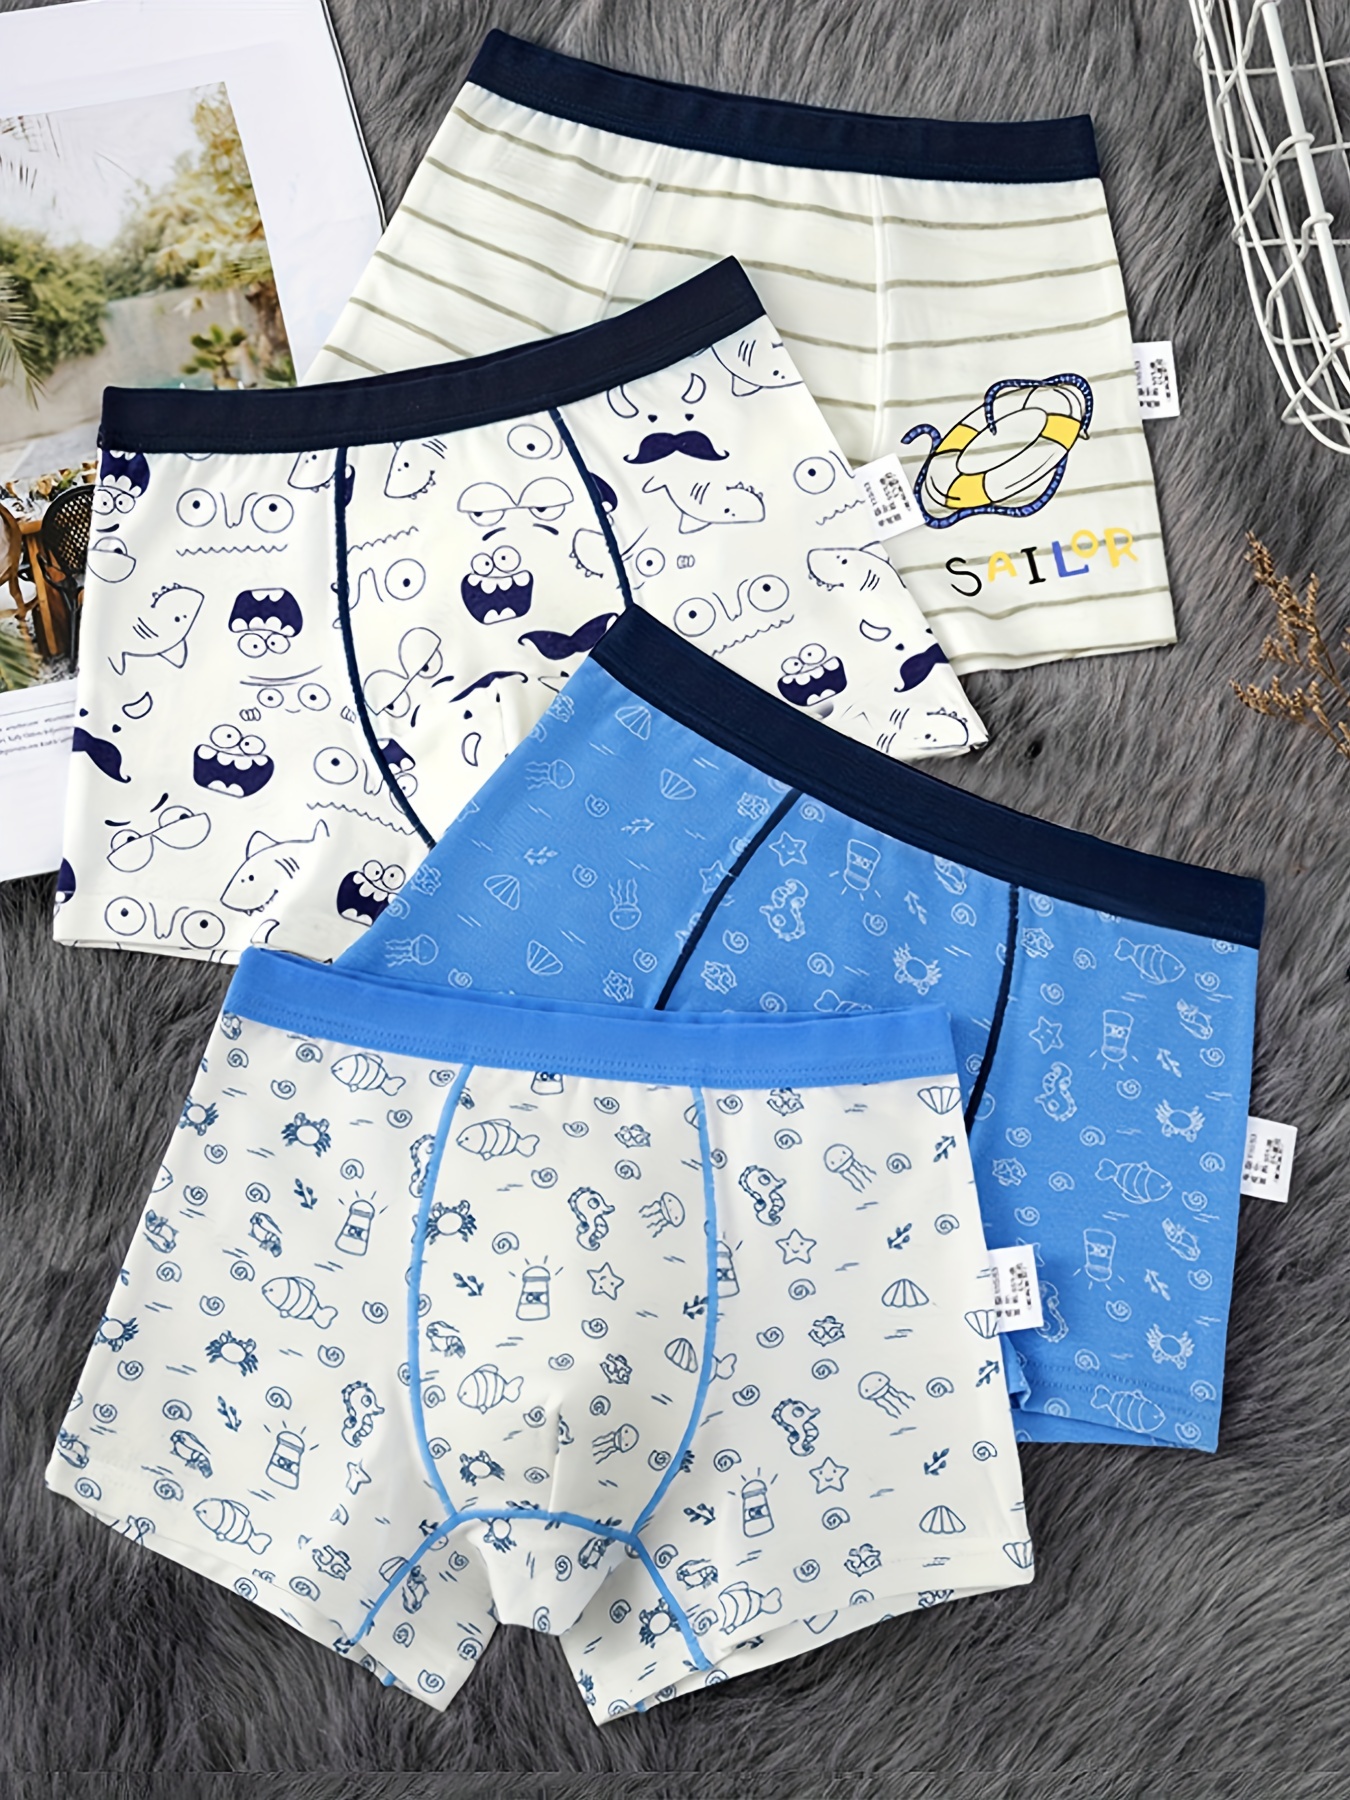 Girl Cute Design Lace Briefs Quality Cotton Soft Kids Underwear Size 3T-10T Children  Underpants 4pcs/Lot Healthy Brief Boxers